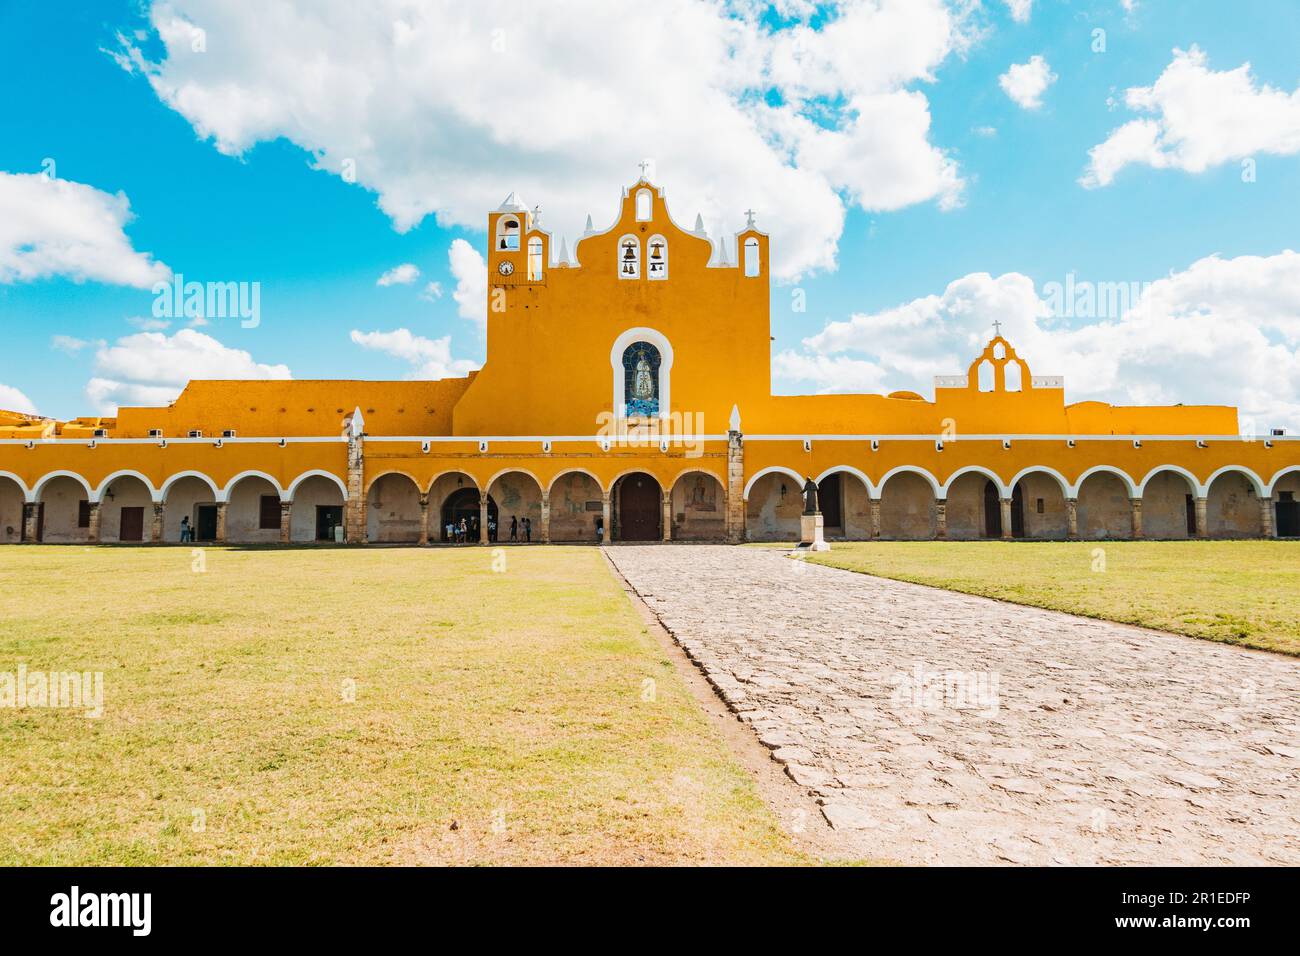 Le couvent San Antonio de Padua du 16e siècle à Izamal, Mexique, alias «ville jaune» Banque D'Images